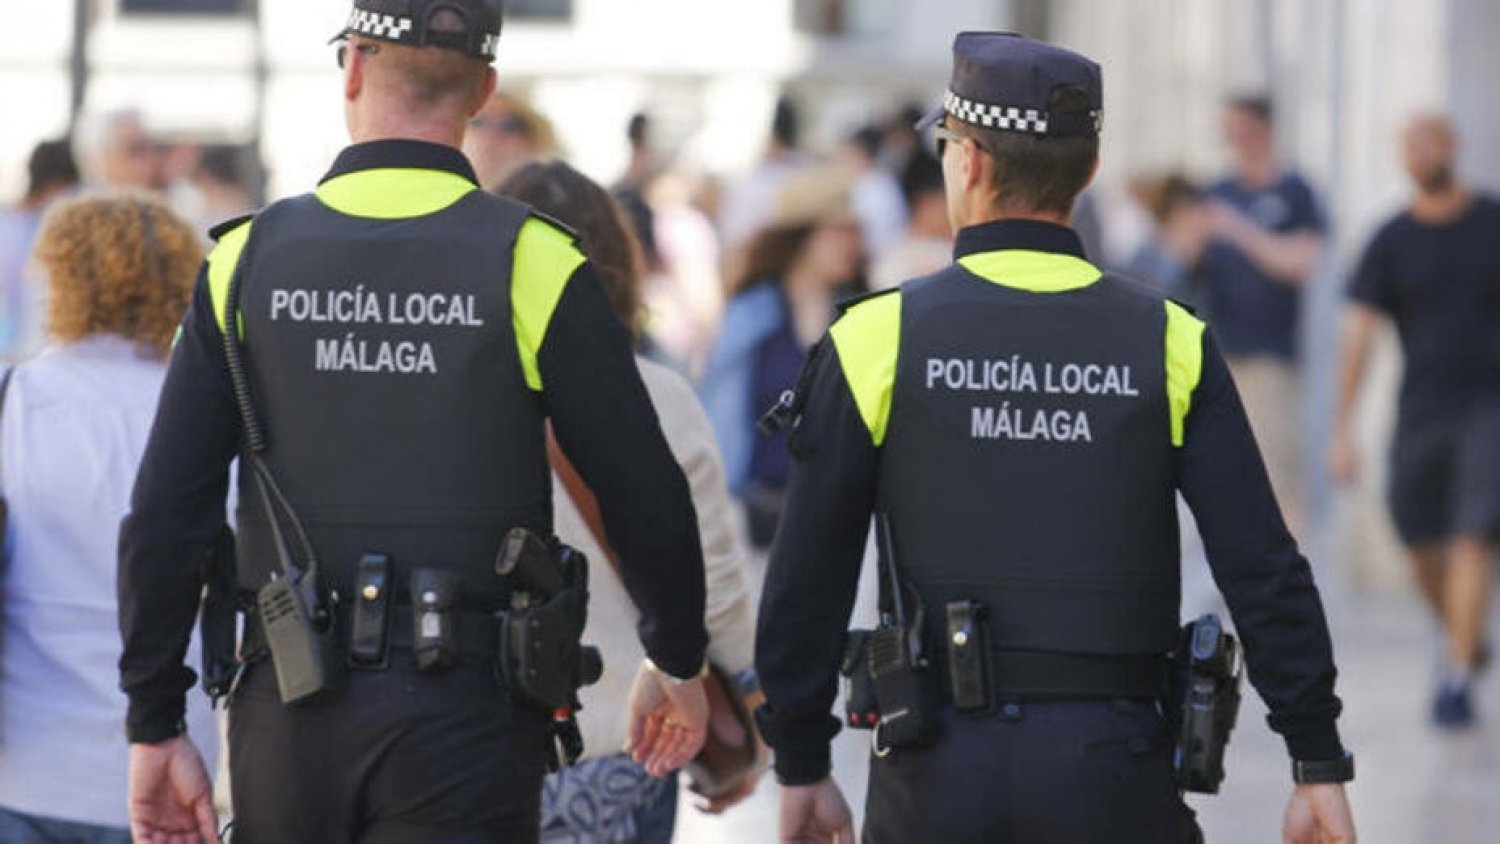 La Policía Local tramita 116 denuncias en materia de control de ruidos y convivencia en la última semana